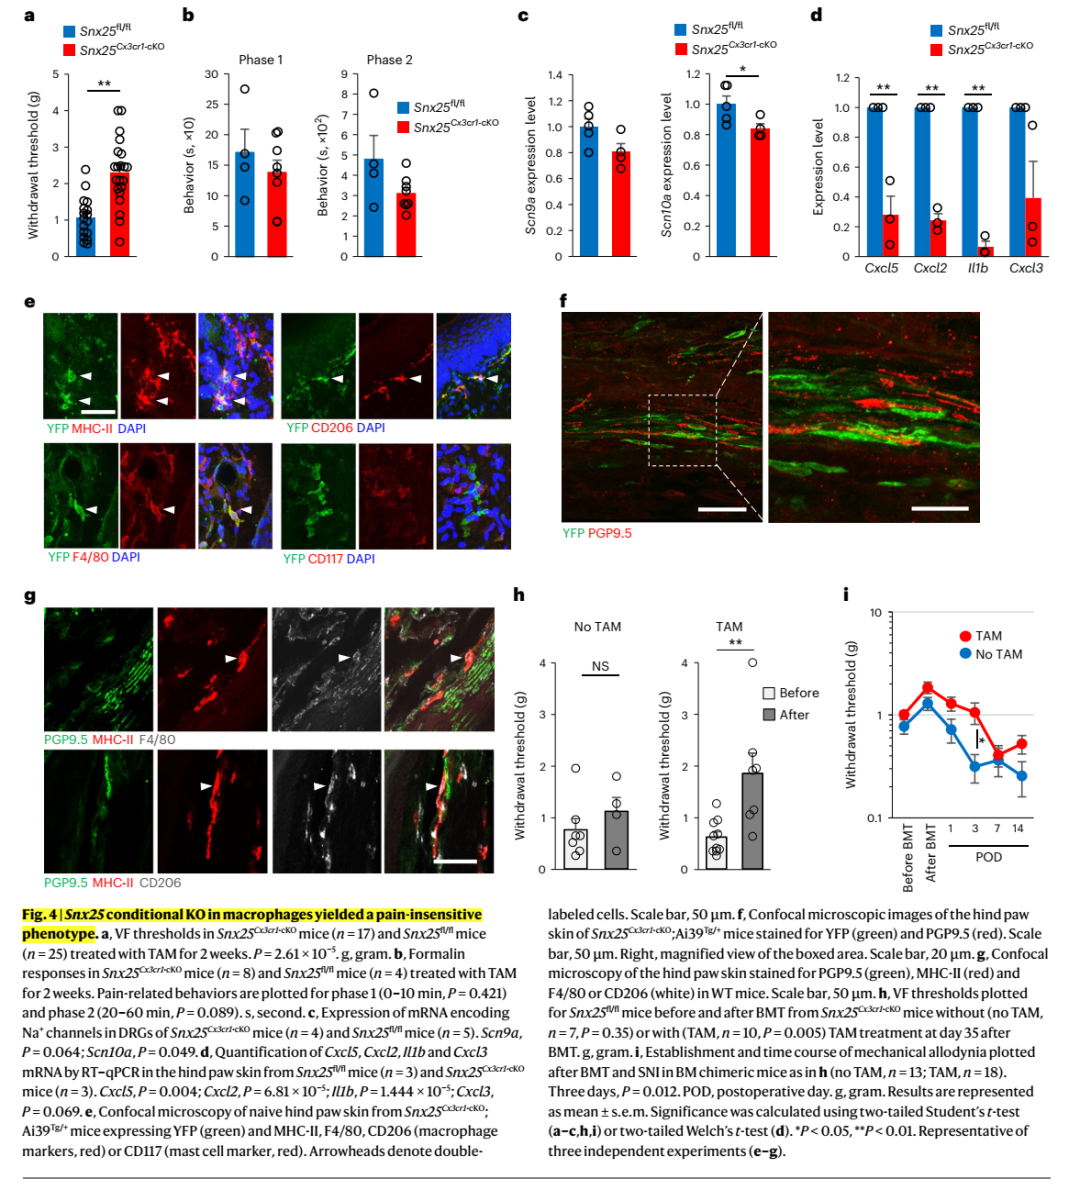 神经免疫交互调控痛觉敏感度：皮肤巨噬细胞SNX25通过调控NGF的表达进而设定痛觉敏感度